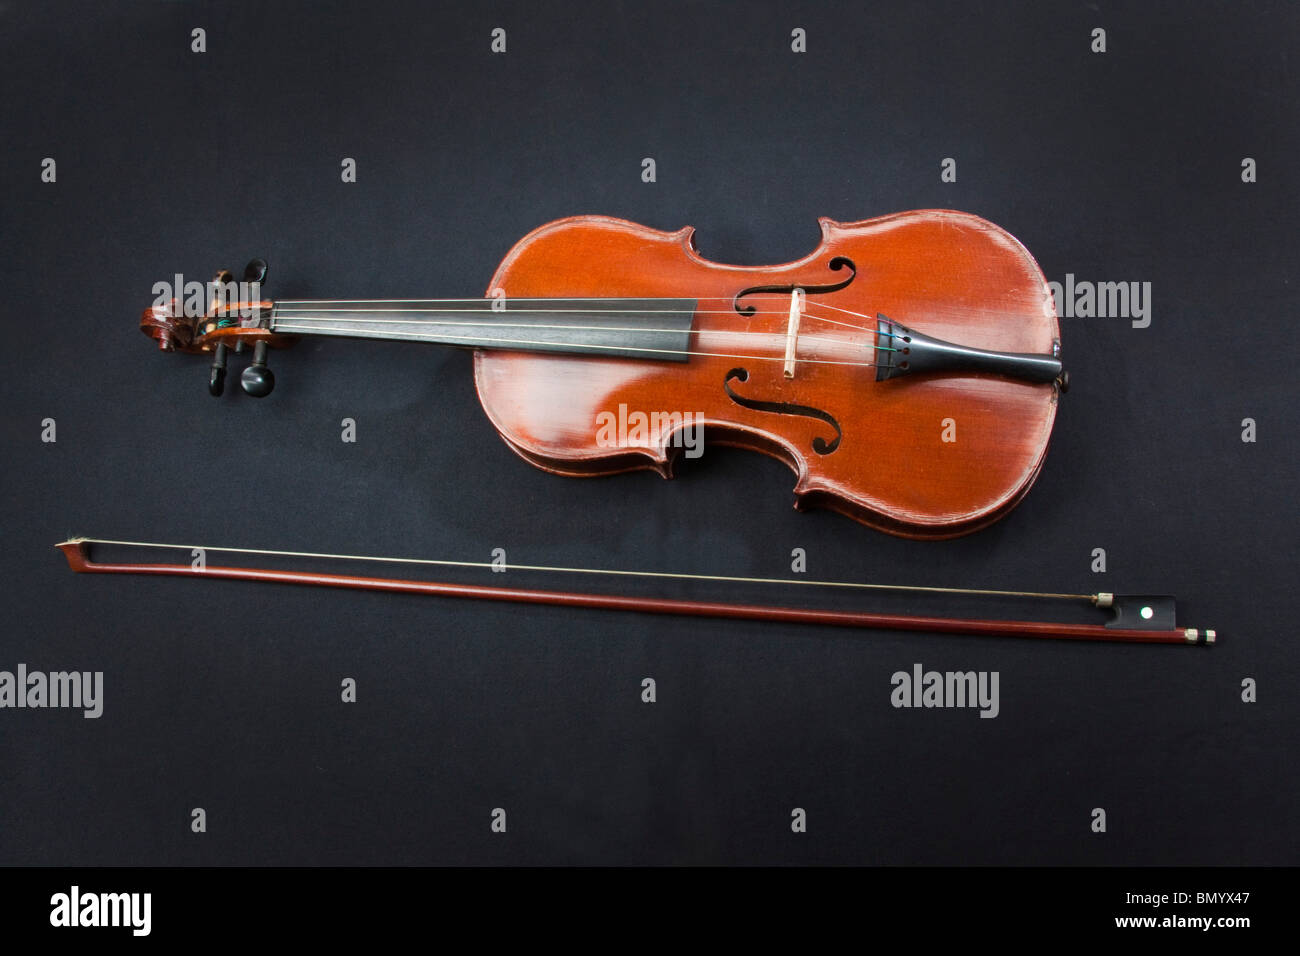 Un violon Stradivarius, full size et bow Antonius Stradivarius Cremonensis. Cremona 104954 Horizontal Banque D'Images